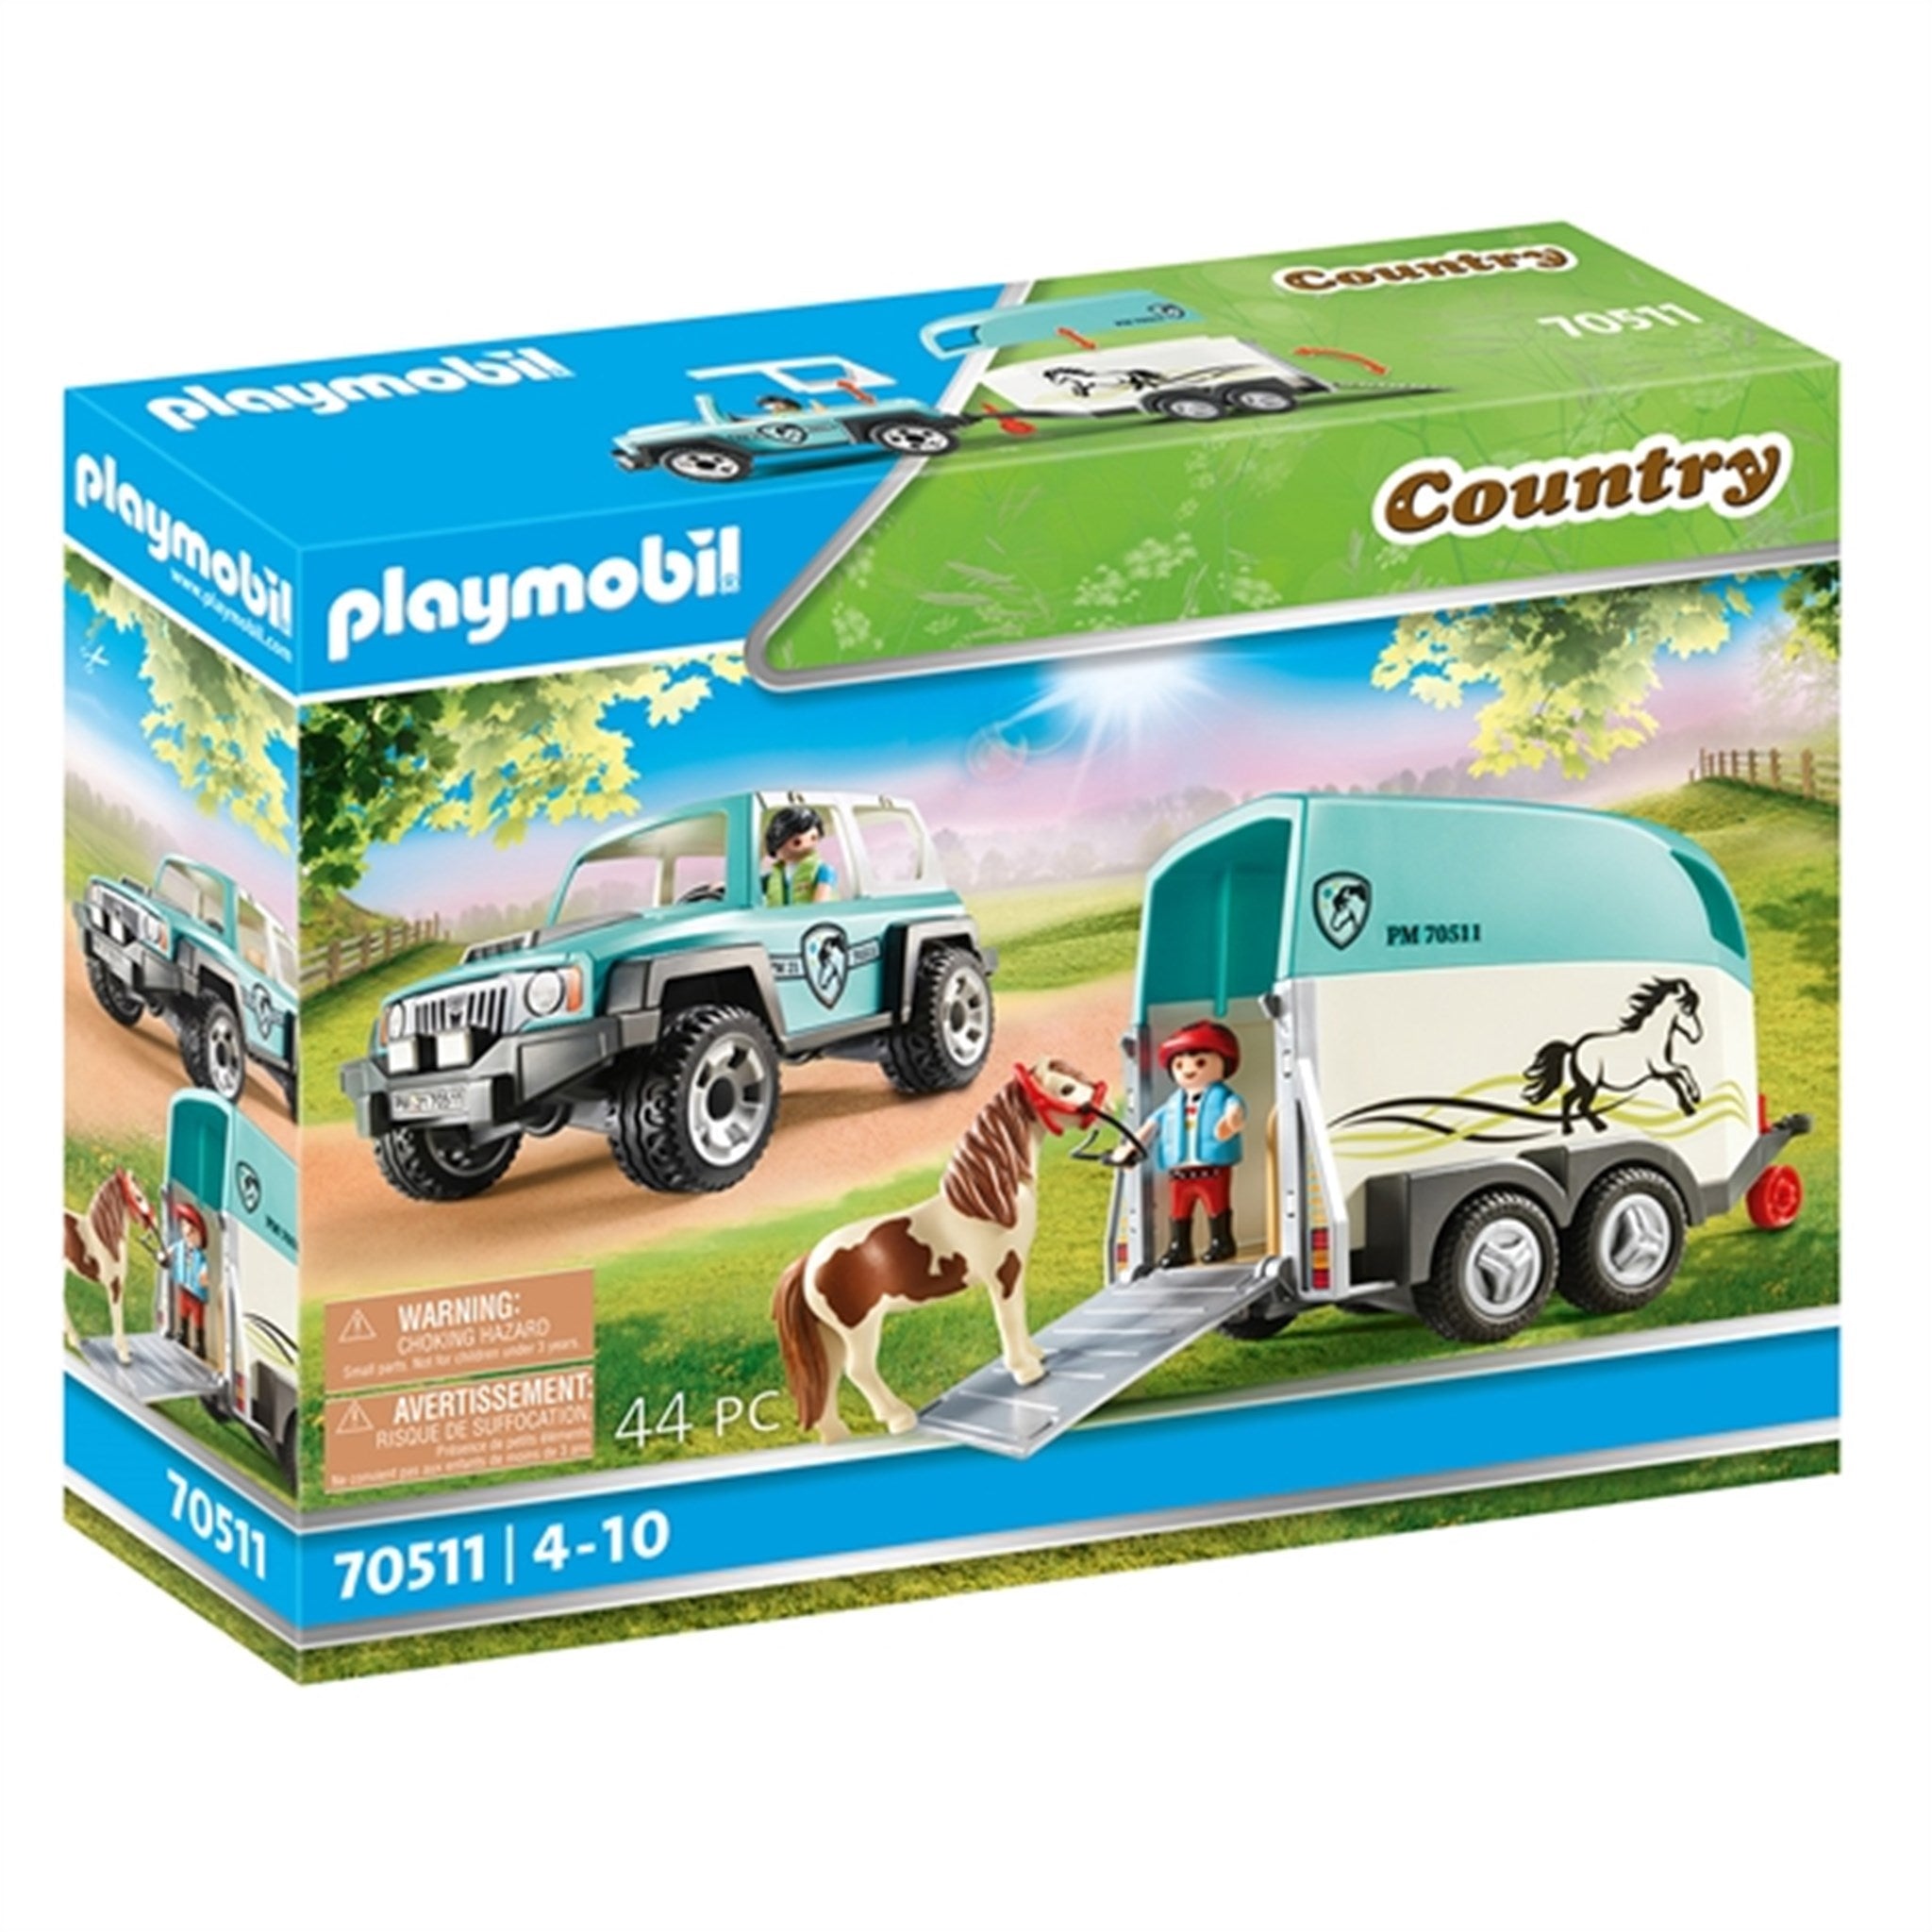 Playmobil® Country - Lastbil med Ponyanhænger